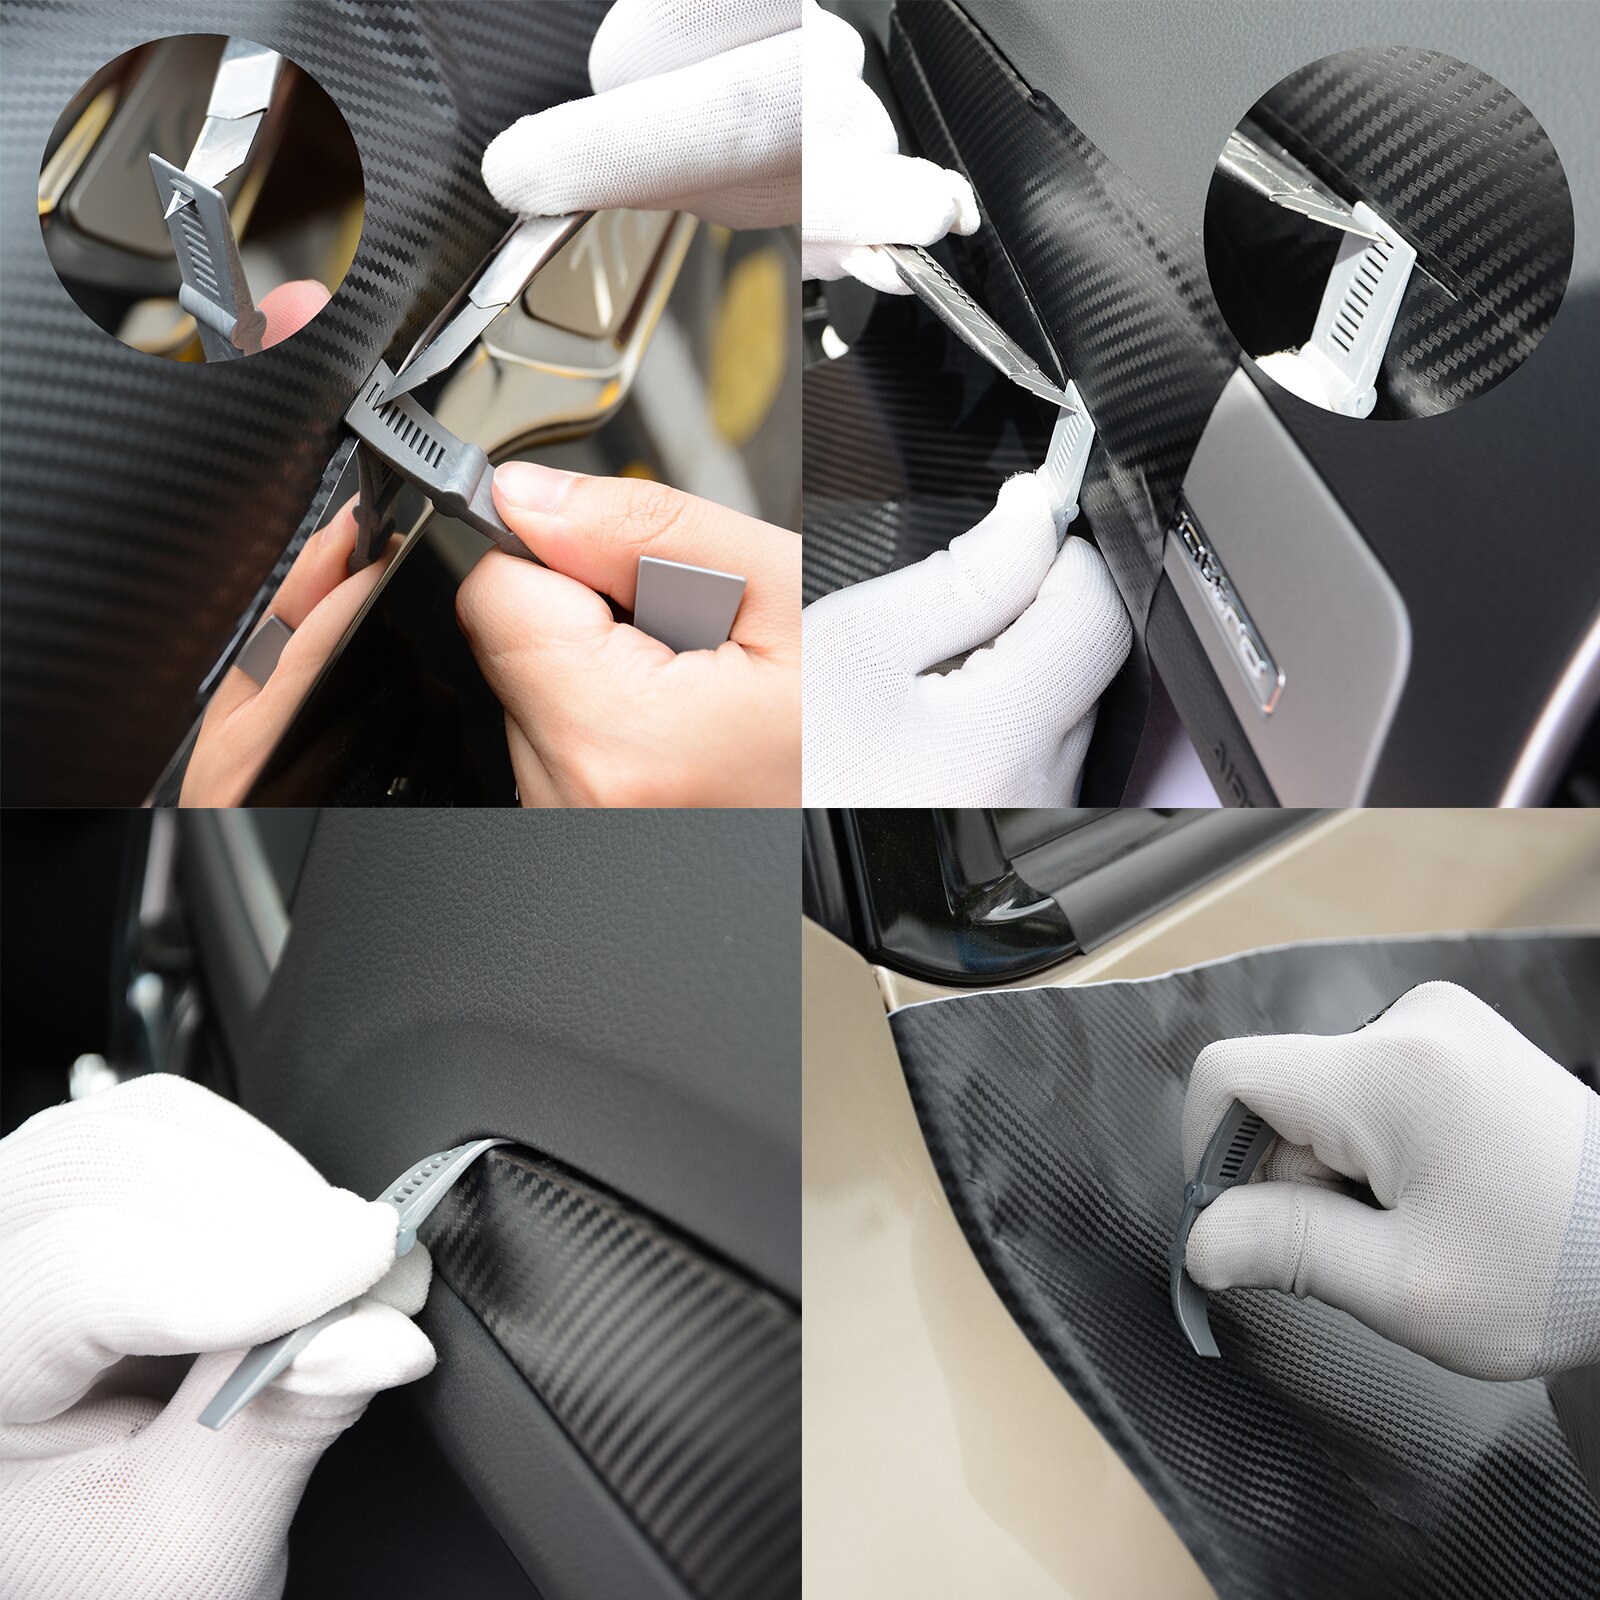 Foshio kulfiber køretøj vinylfolie vinduesfarve folie film værktøjssæt biltilbehør magnetstang gummiskraber barbermaskine skraber